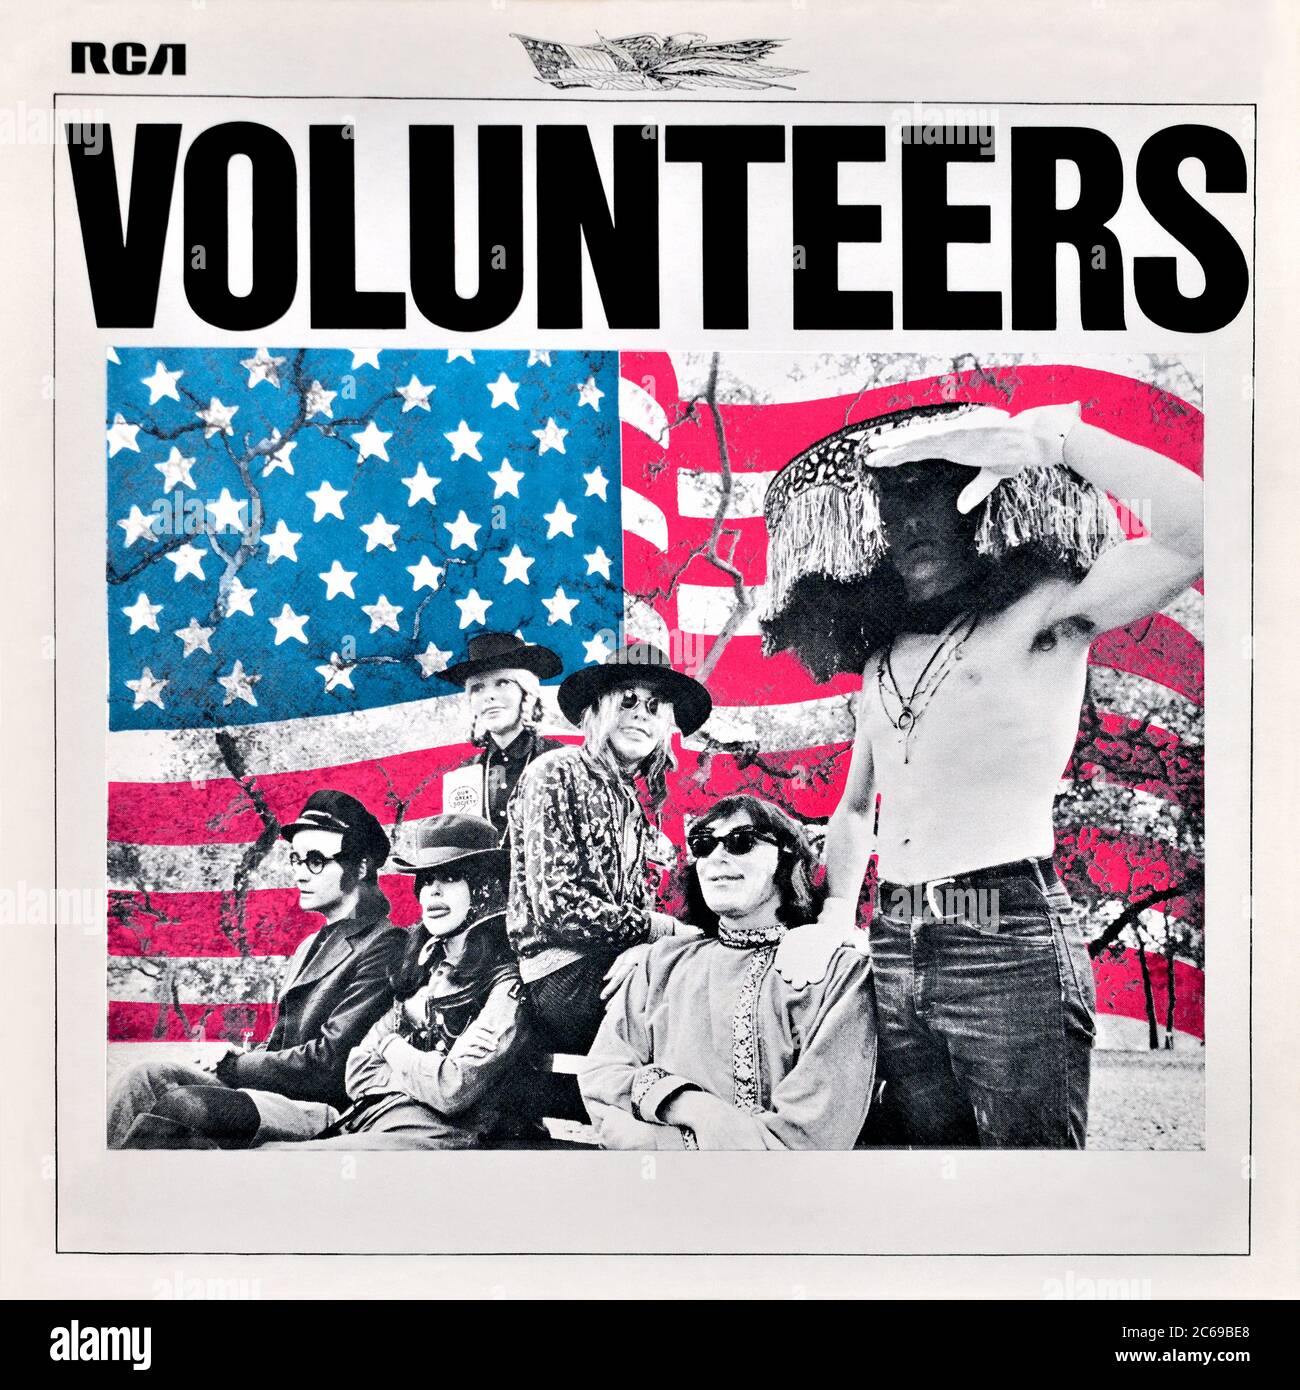 Jefferson Airplane - couverture originale de l'album en vinyle - volontaires - 1969 Banque D'Images